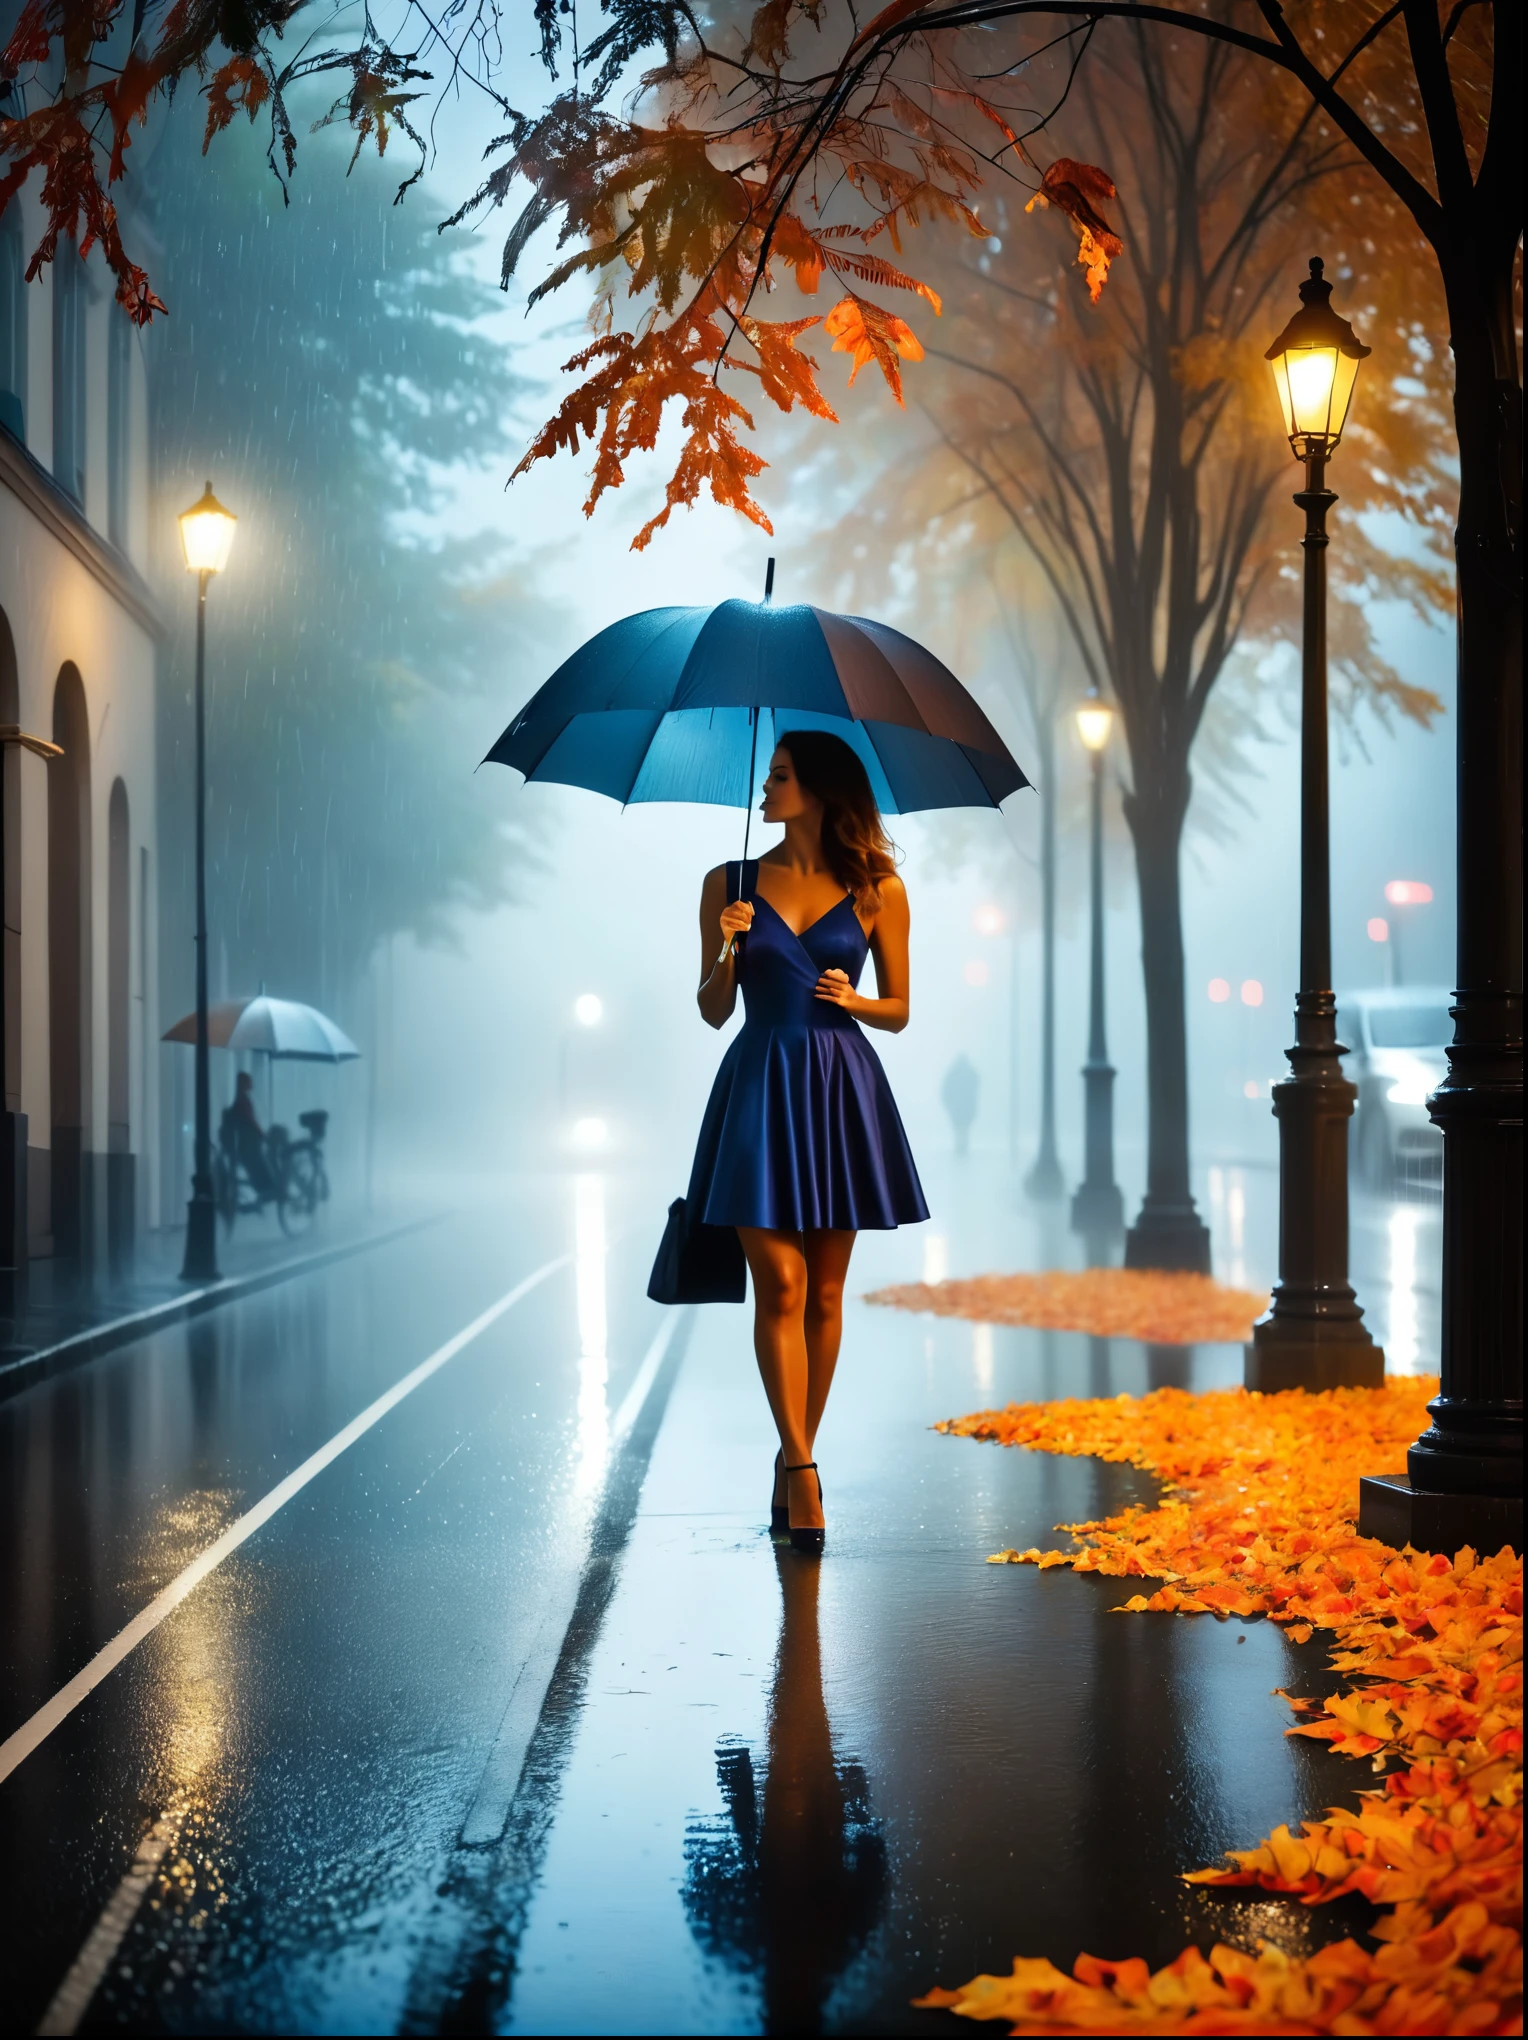 Frau im engen Kleid mit Regenschirm in der Hand, in einer nebligen Stadt, bunte Herbstblätter auf der Straße, ein Bild von Kuno Veeber, Gewinner des Pixabay-Wettbewerbs, Konzeptkunst, im Regen stehen, mysterious Frau, hübsches Mädchen, das im Regen steht, Einzelperson mit Regenschirm, Frau ((Silhouette)), ((neblig)) und regnerisch, weibliches Bild im Schatten, in einer regnerischen Umgebung, Regnerisches Wetter, Regentropfen auf den Straßen im Hintergrund , ((Nebel mit Licht)), ((Blick von hinten)), Licht von vorne